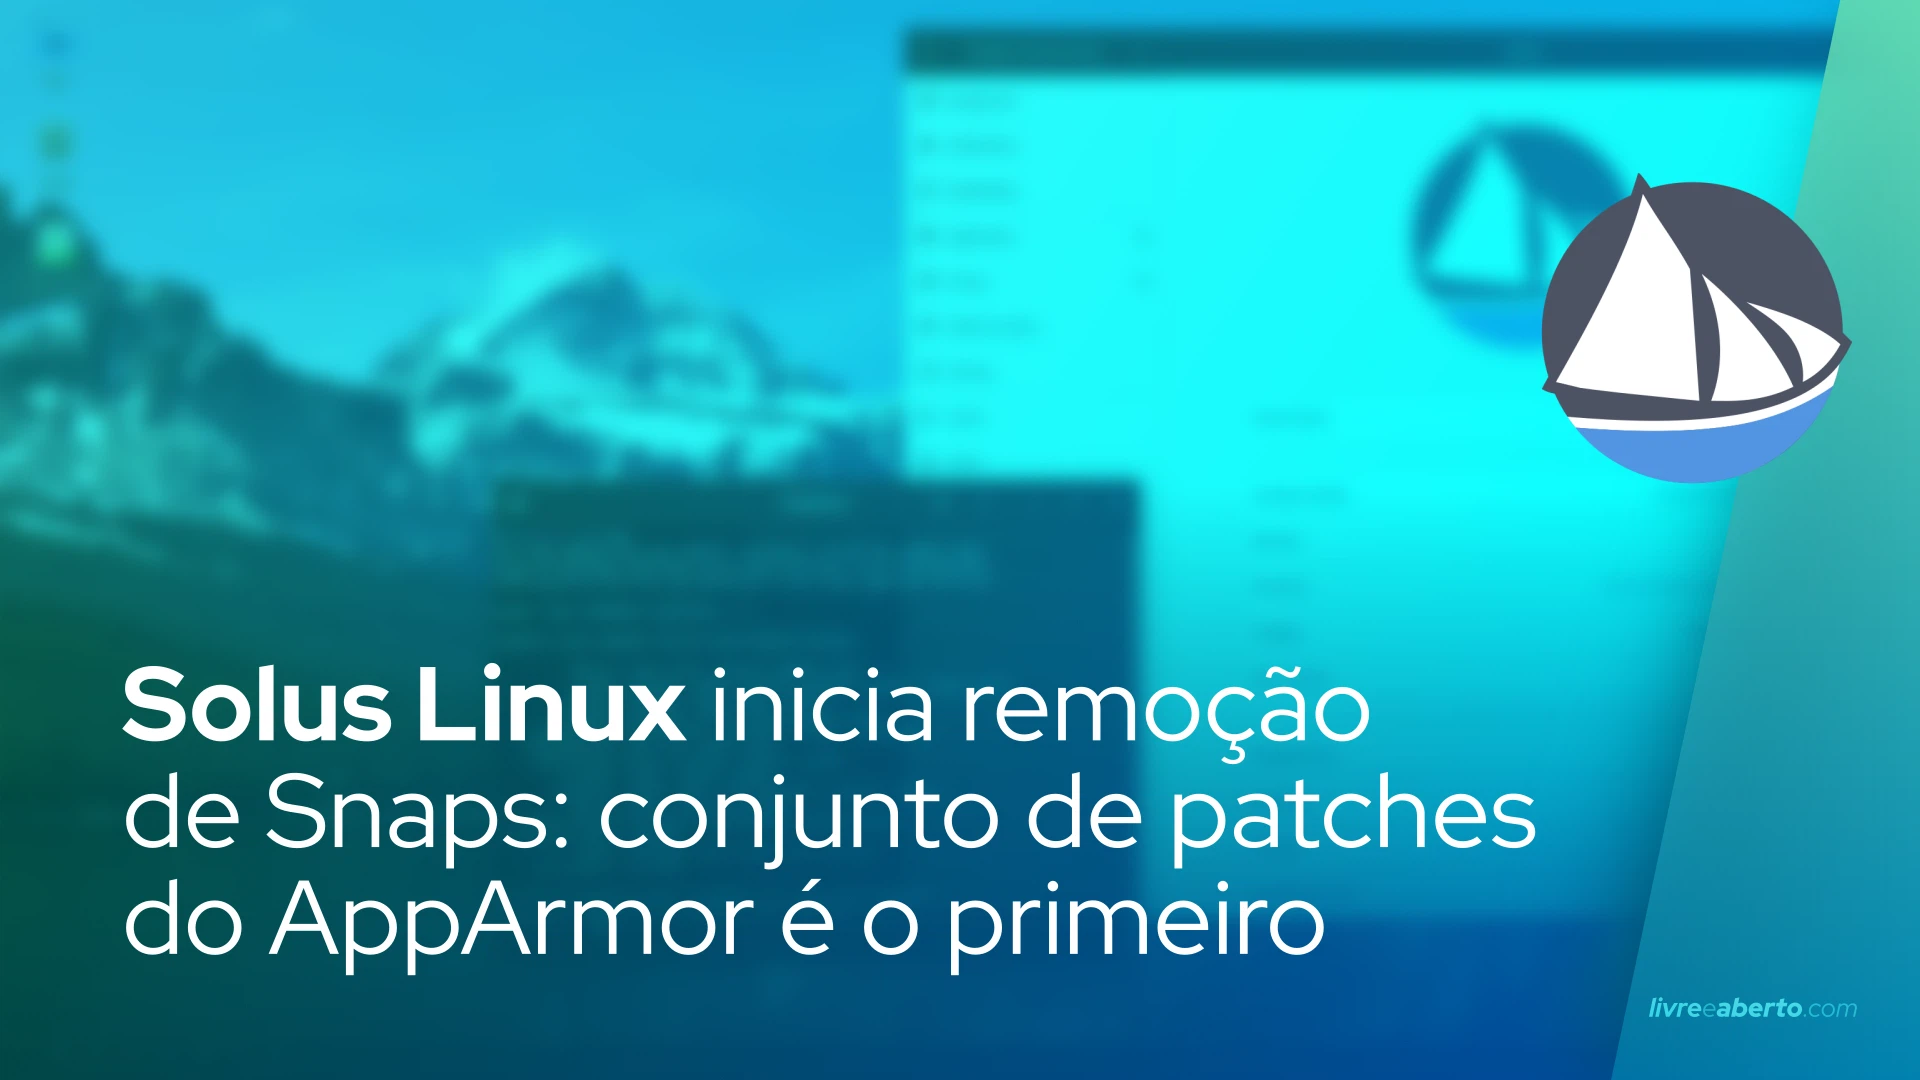 Solus Linux inicia remoção de Snaps: conjunto de patches do AppArmor é o primeiro